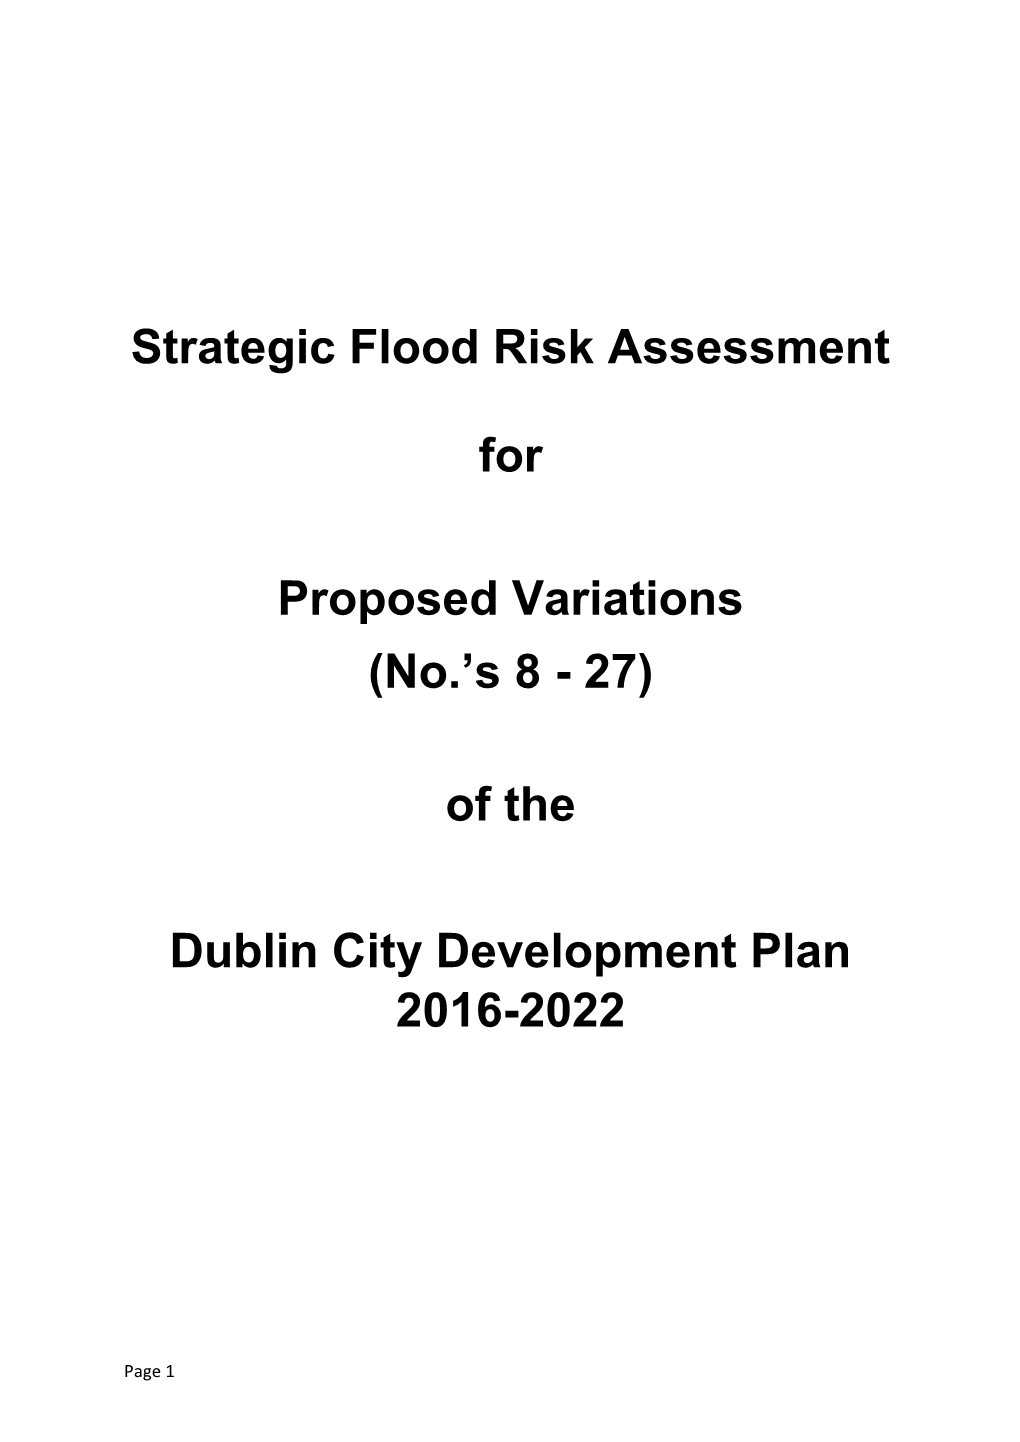 Strategic Flood Risk Assessment Variations 8